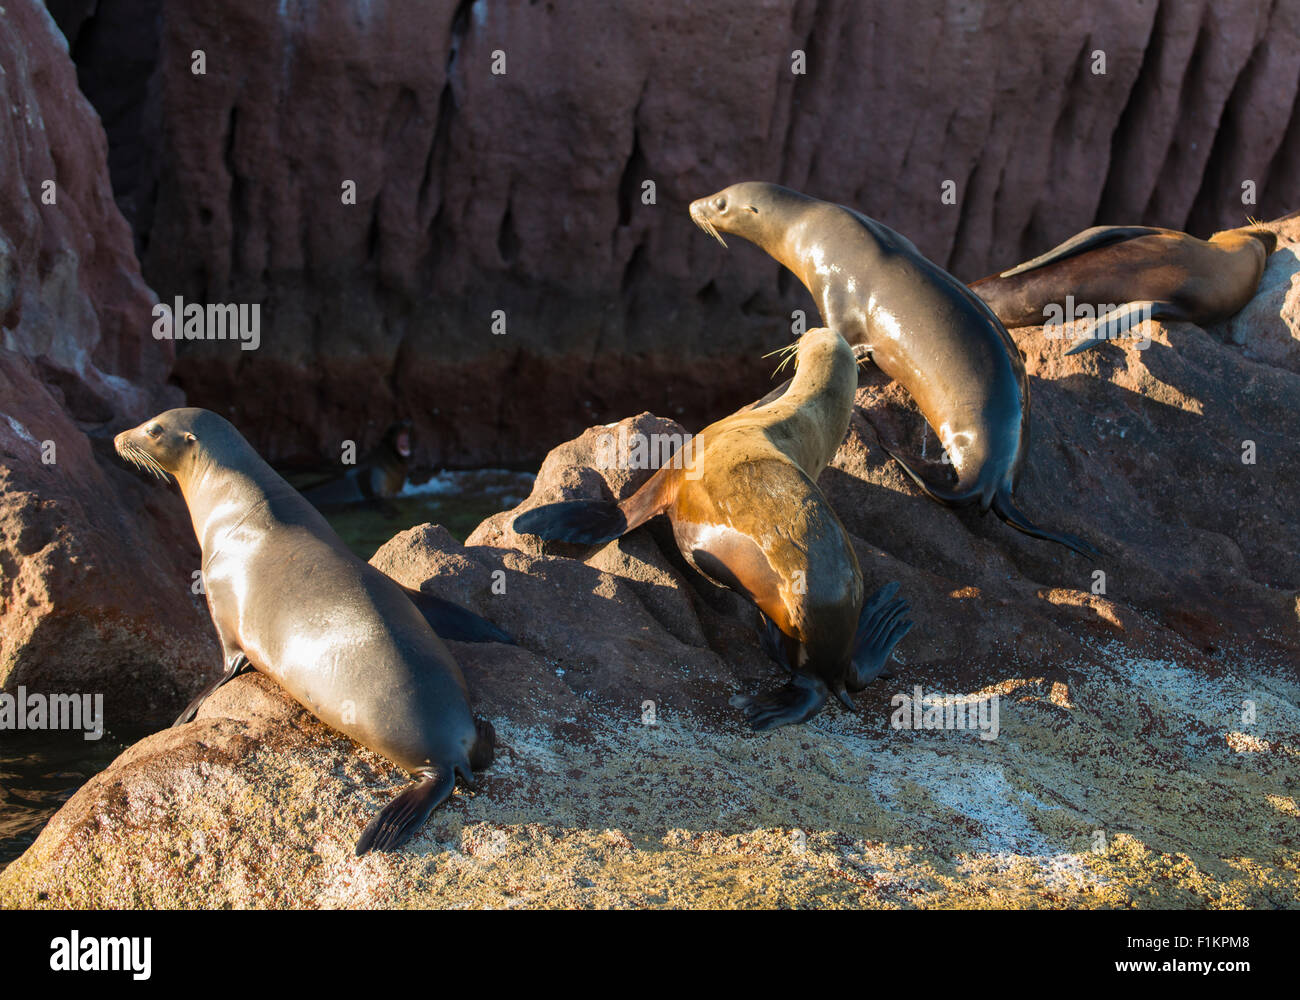 México, Baja, Lapaz, Espiritu Santo. Lobos marinos tomando sol en las rocas. Foto de stock